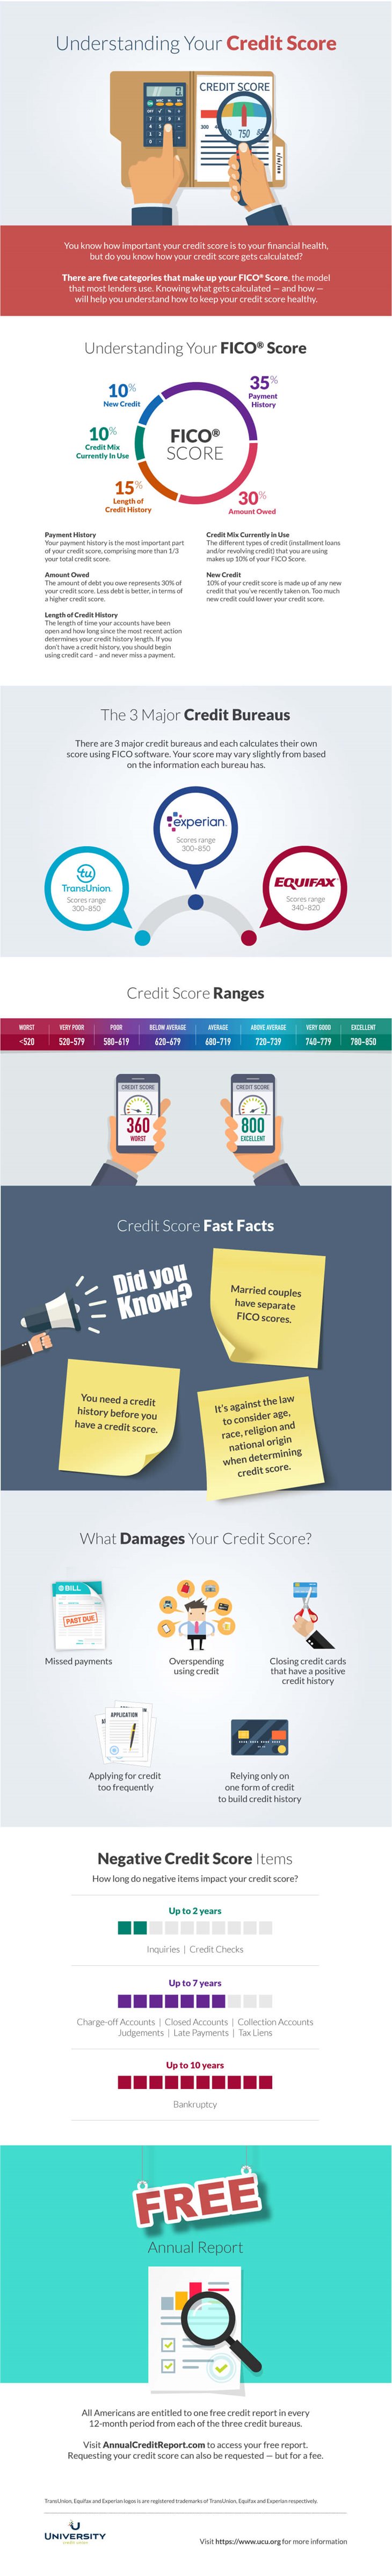 Understanding Your Credit